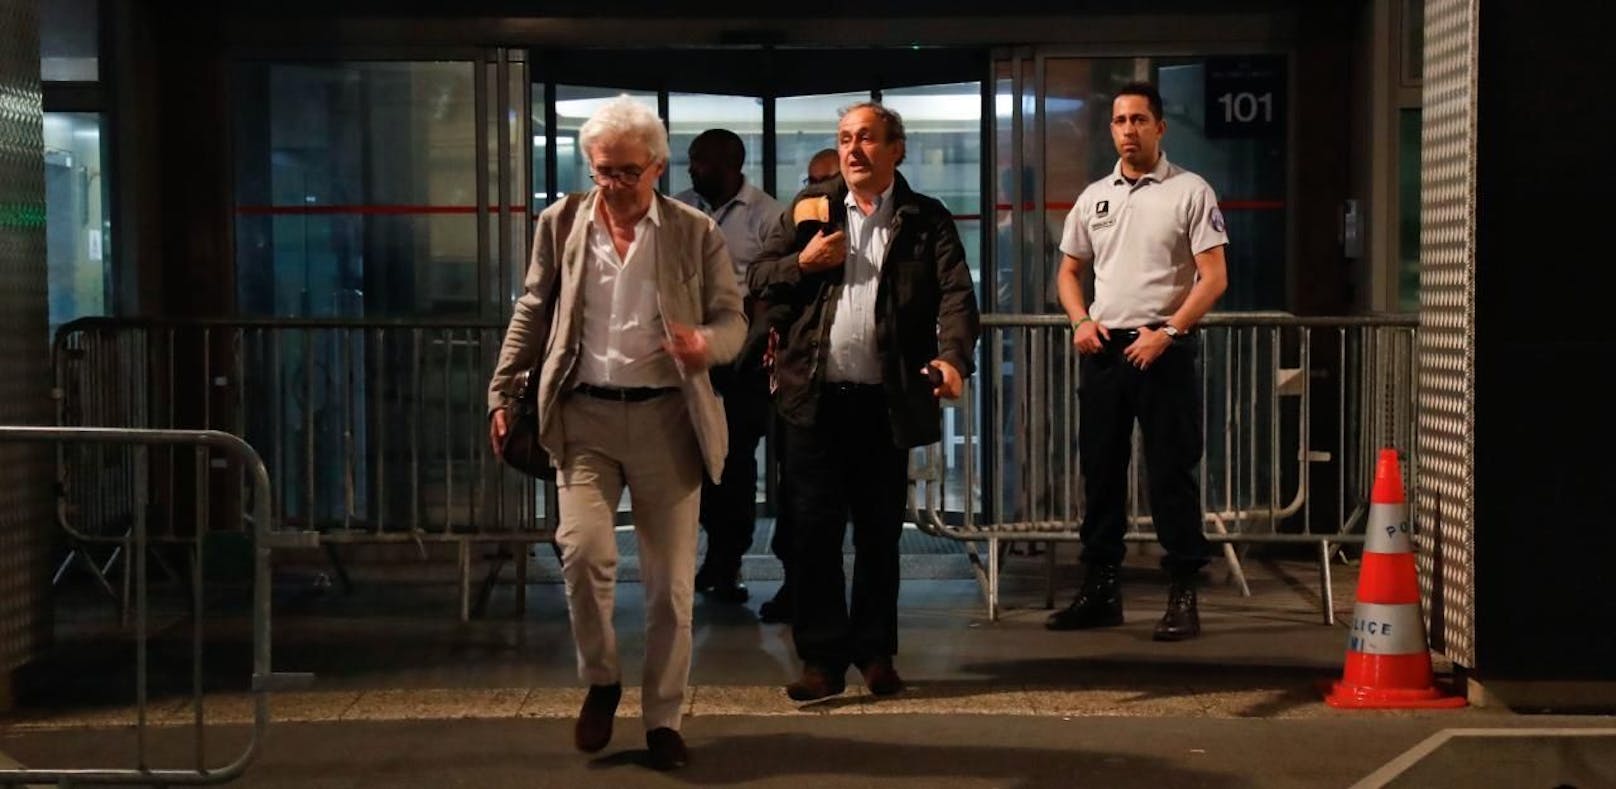 Ex-UEFA-Chef Michel Platini und sein Anwalt William Bourdon verlassen die Zentrale nach stundenlanger Vernehmung.